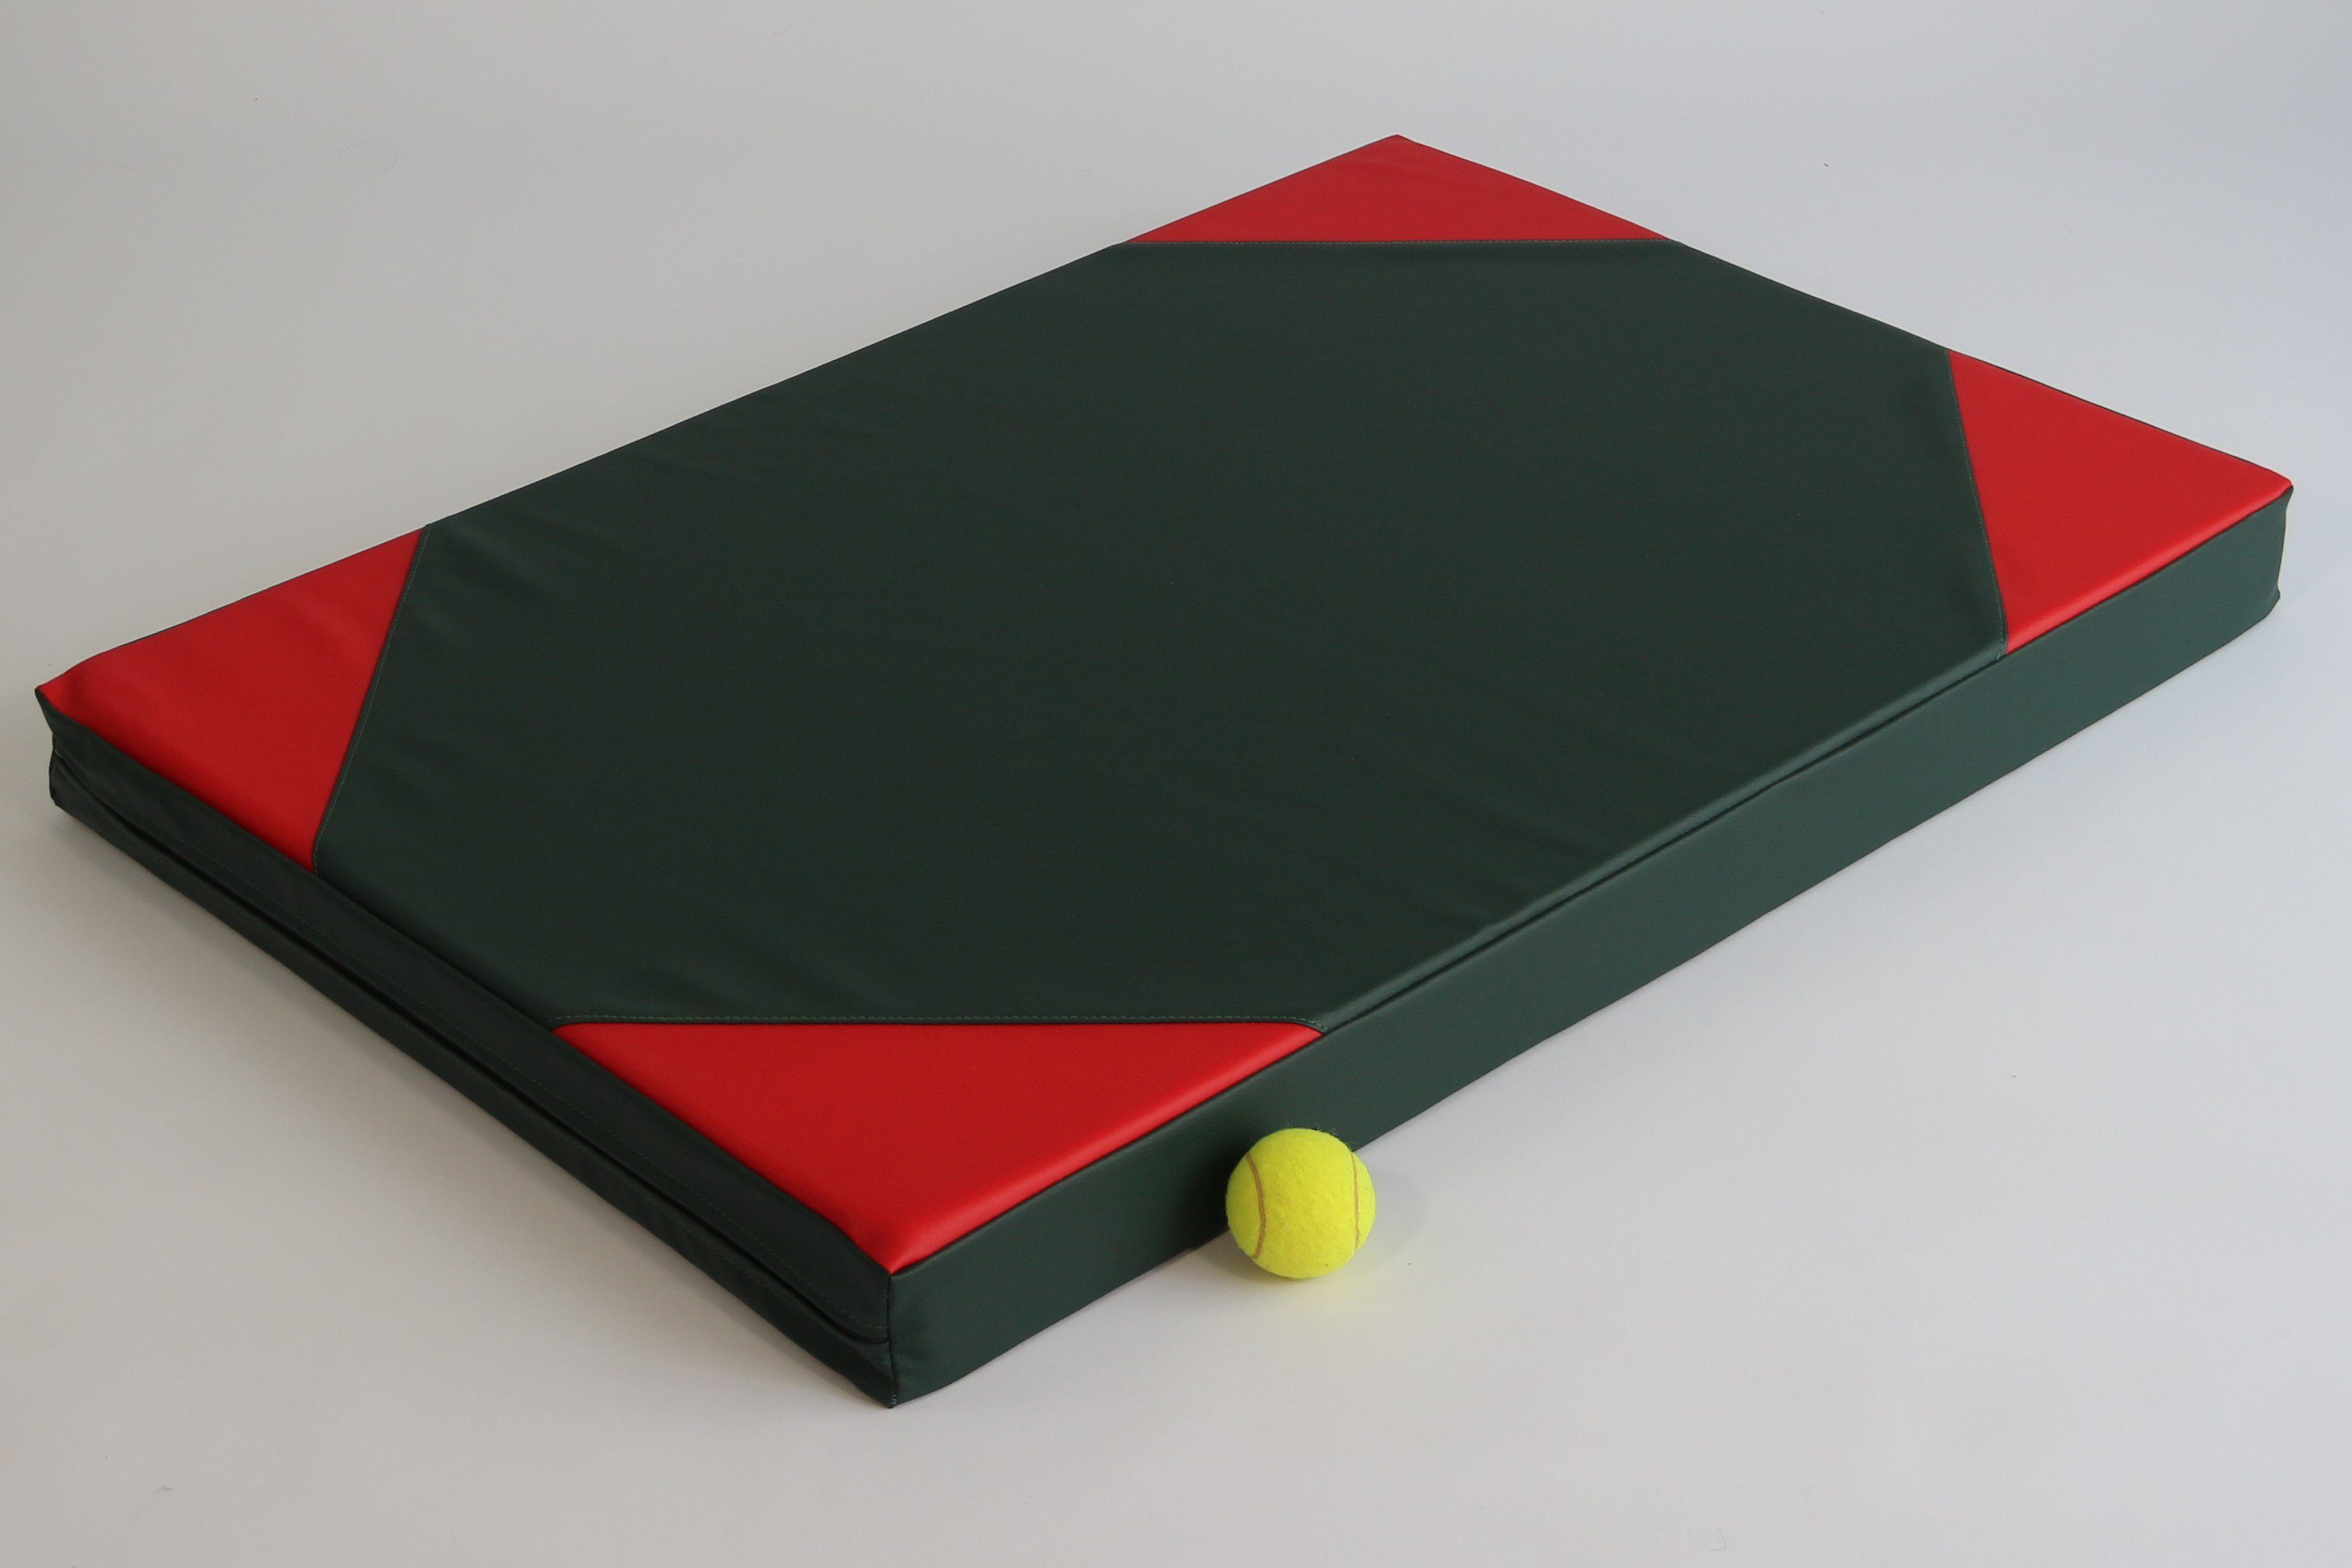 x Weichbodenmatte cm 8 Made-in-Germany 1er-Pack), Turnmatte Schutzmatte 100 x (einzeln, 70 NiroSport Gymnastikmatte Grün Turnmatte